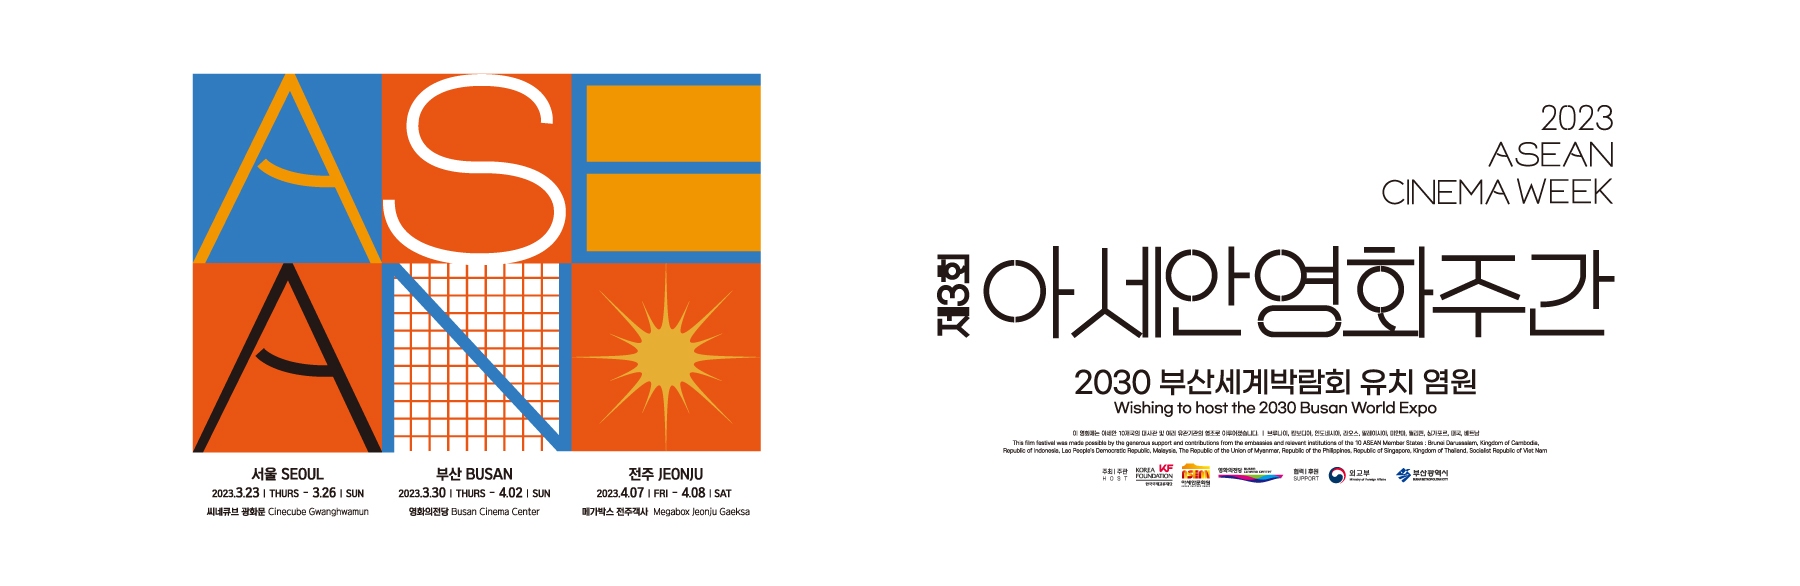 제3회 아세안영화주간 2030 부산세계박람회 유치 염원